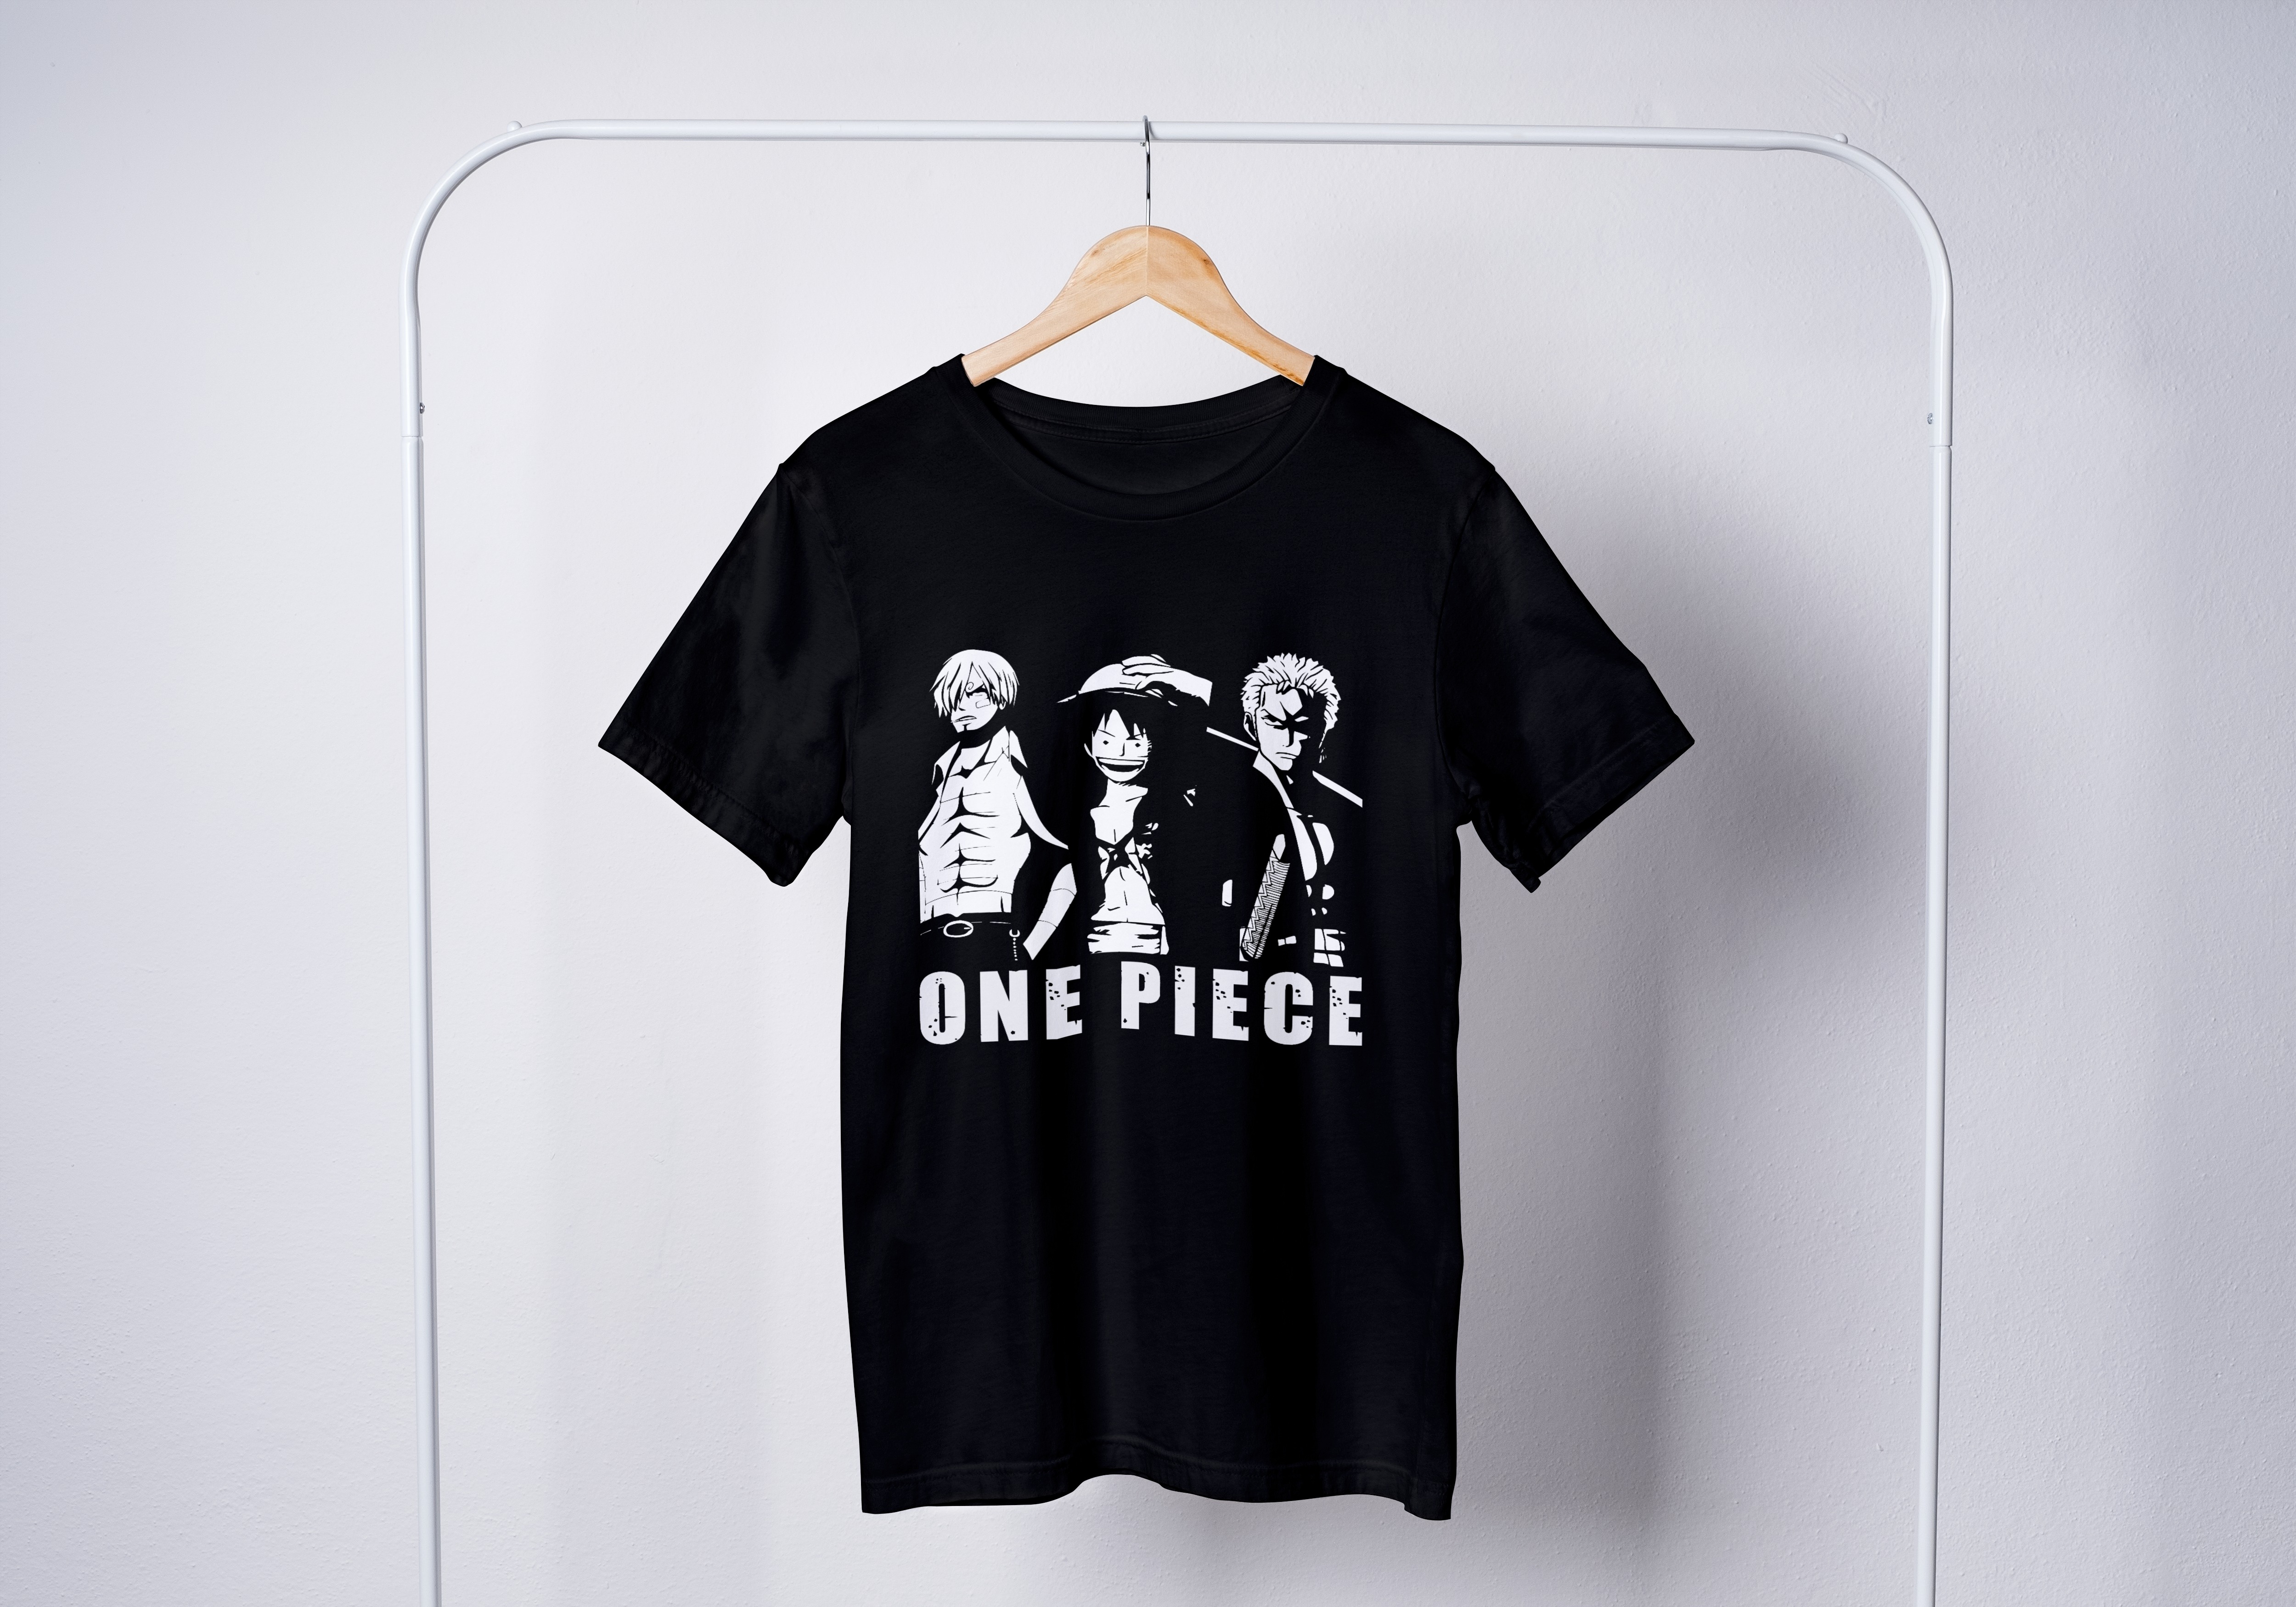 One Piece Tops - חולצה לופי זורו סנג'י - וואן פיס